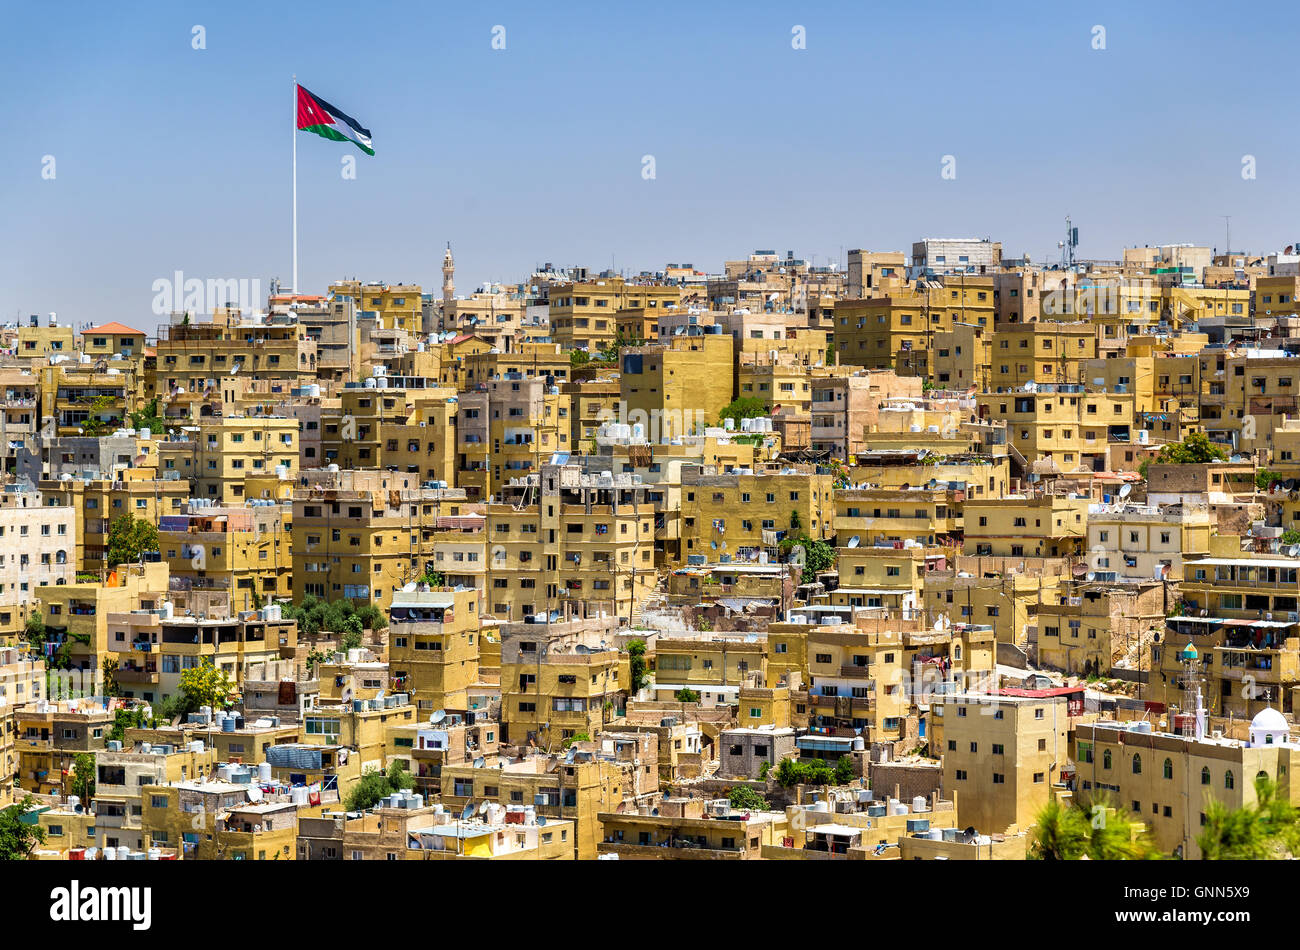 Cityscape of Amman, Jordan Stock Photo